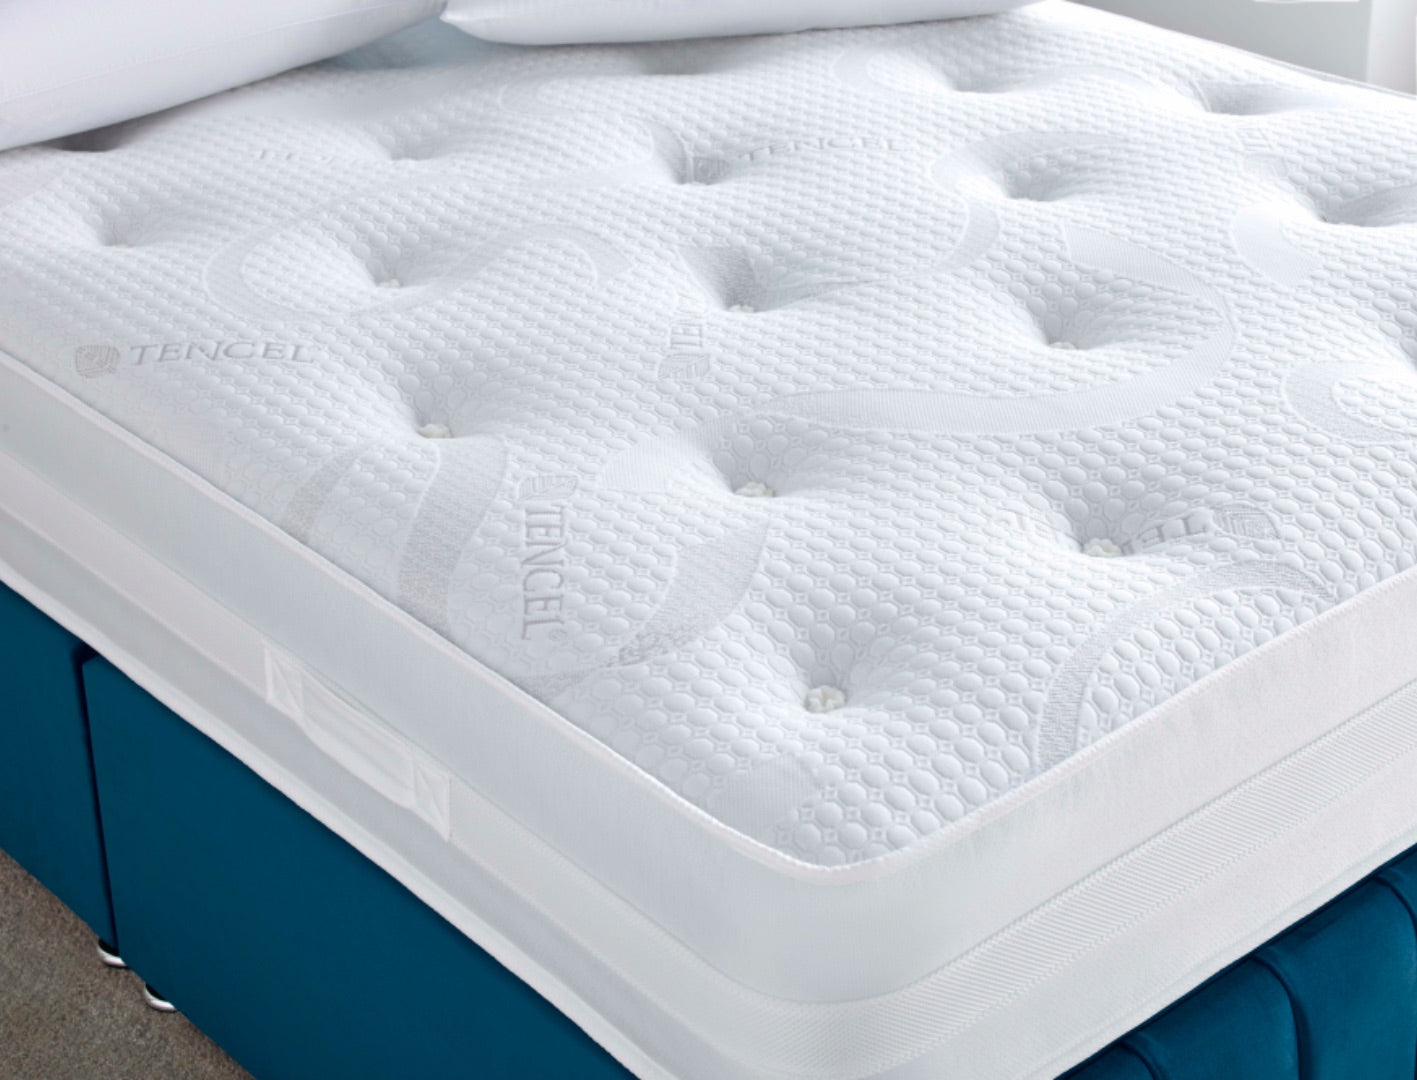 Giltedge Beds Comfort Tencel 1000 Pocket Sprung Mattress